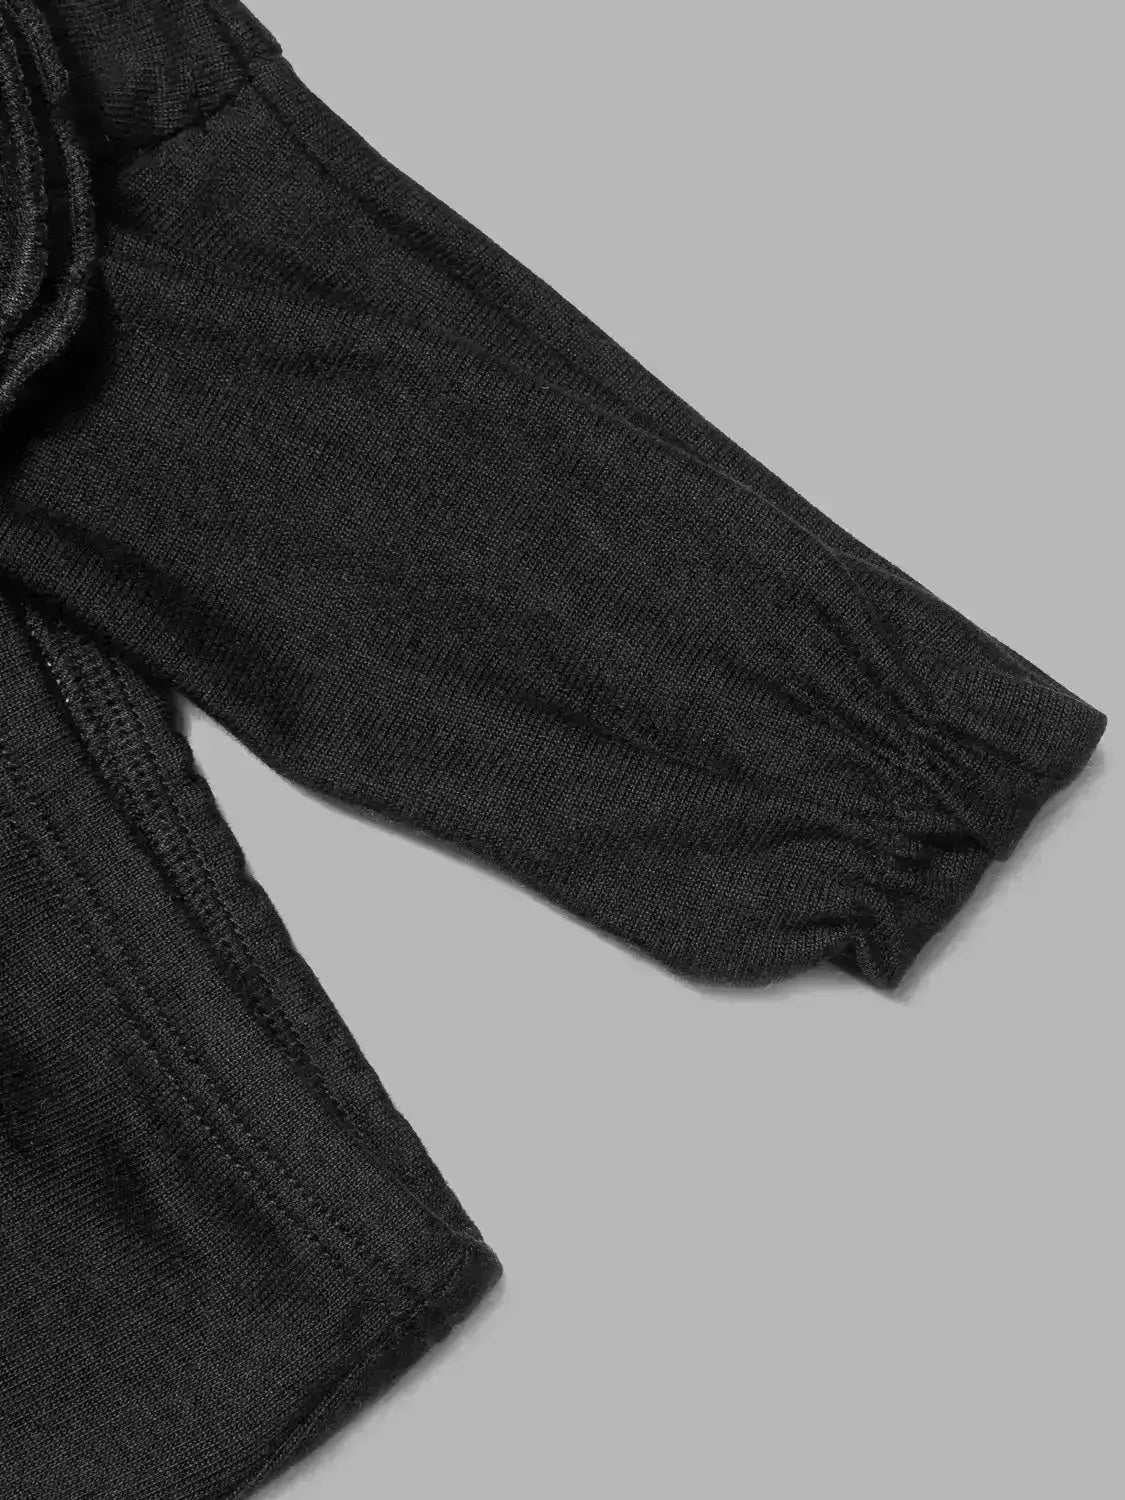 LOUISE FLARE PANTS BLACK – LECOLLET